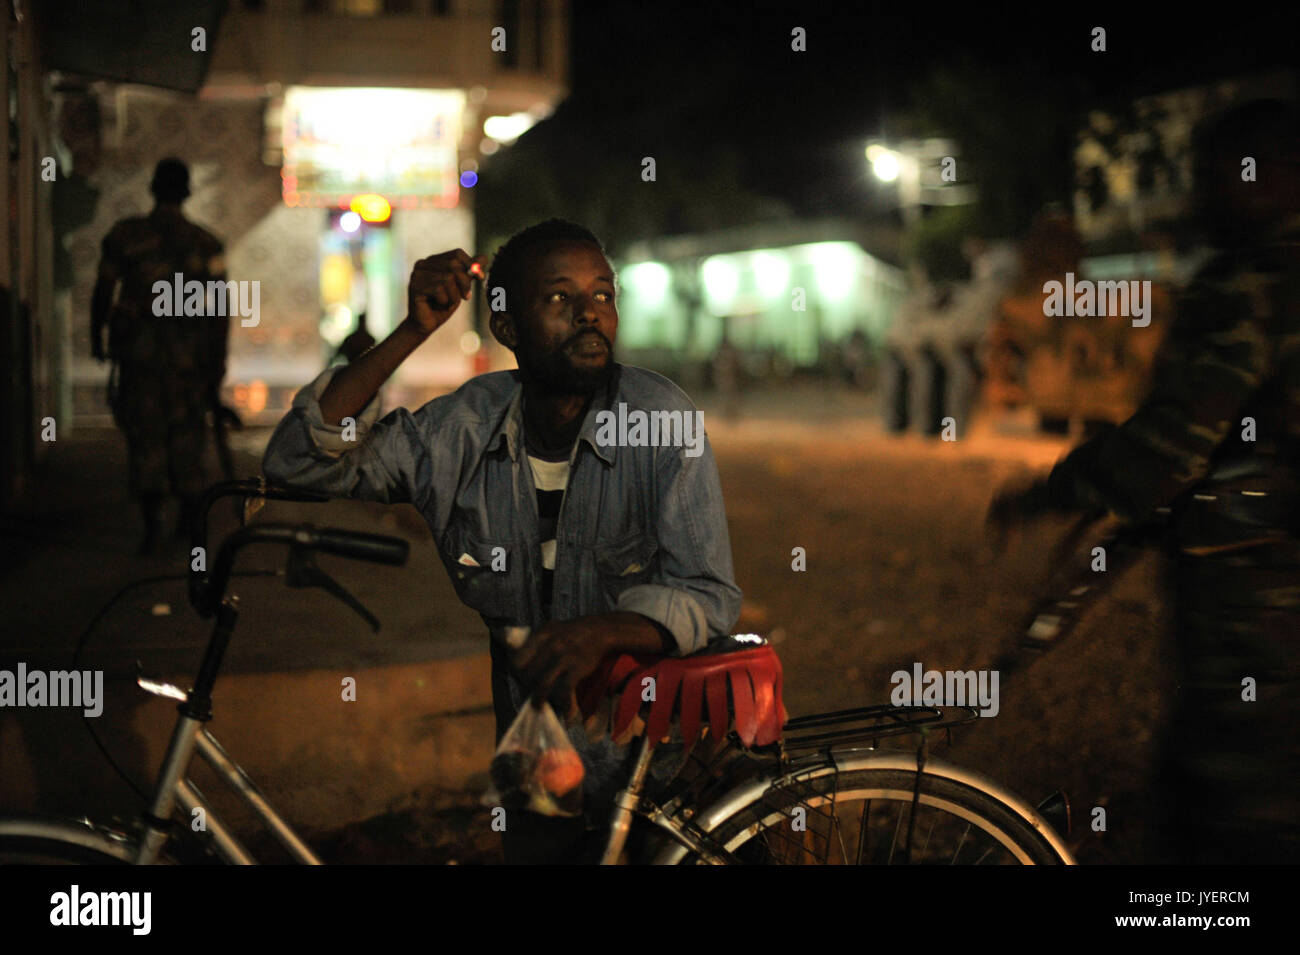 Un homme fume une cigarette pendant que les soldats éthiopiens, dans le cadre de la Mission de l'Union africaine en Somalie, la conduite d'une patrouille de nuit à travers la ville de Baidoa, la Somalie, le 22 juin. Photo de l'AMISOM Tobin (14332224890) Banque D'Images